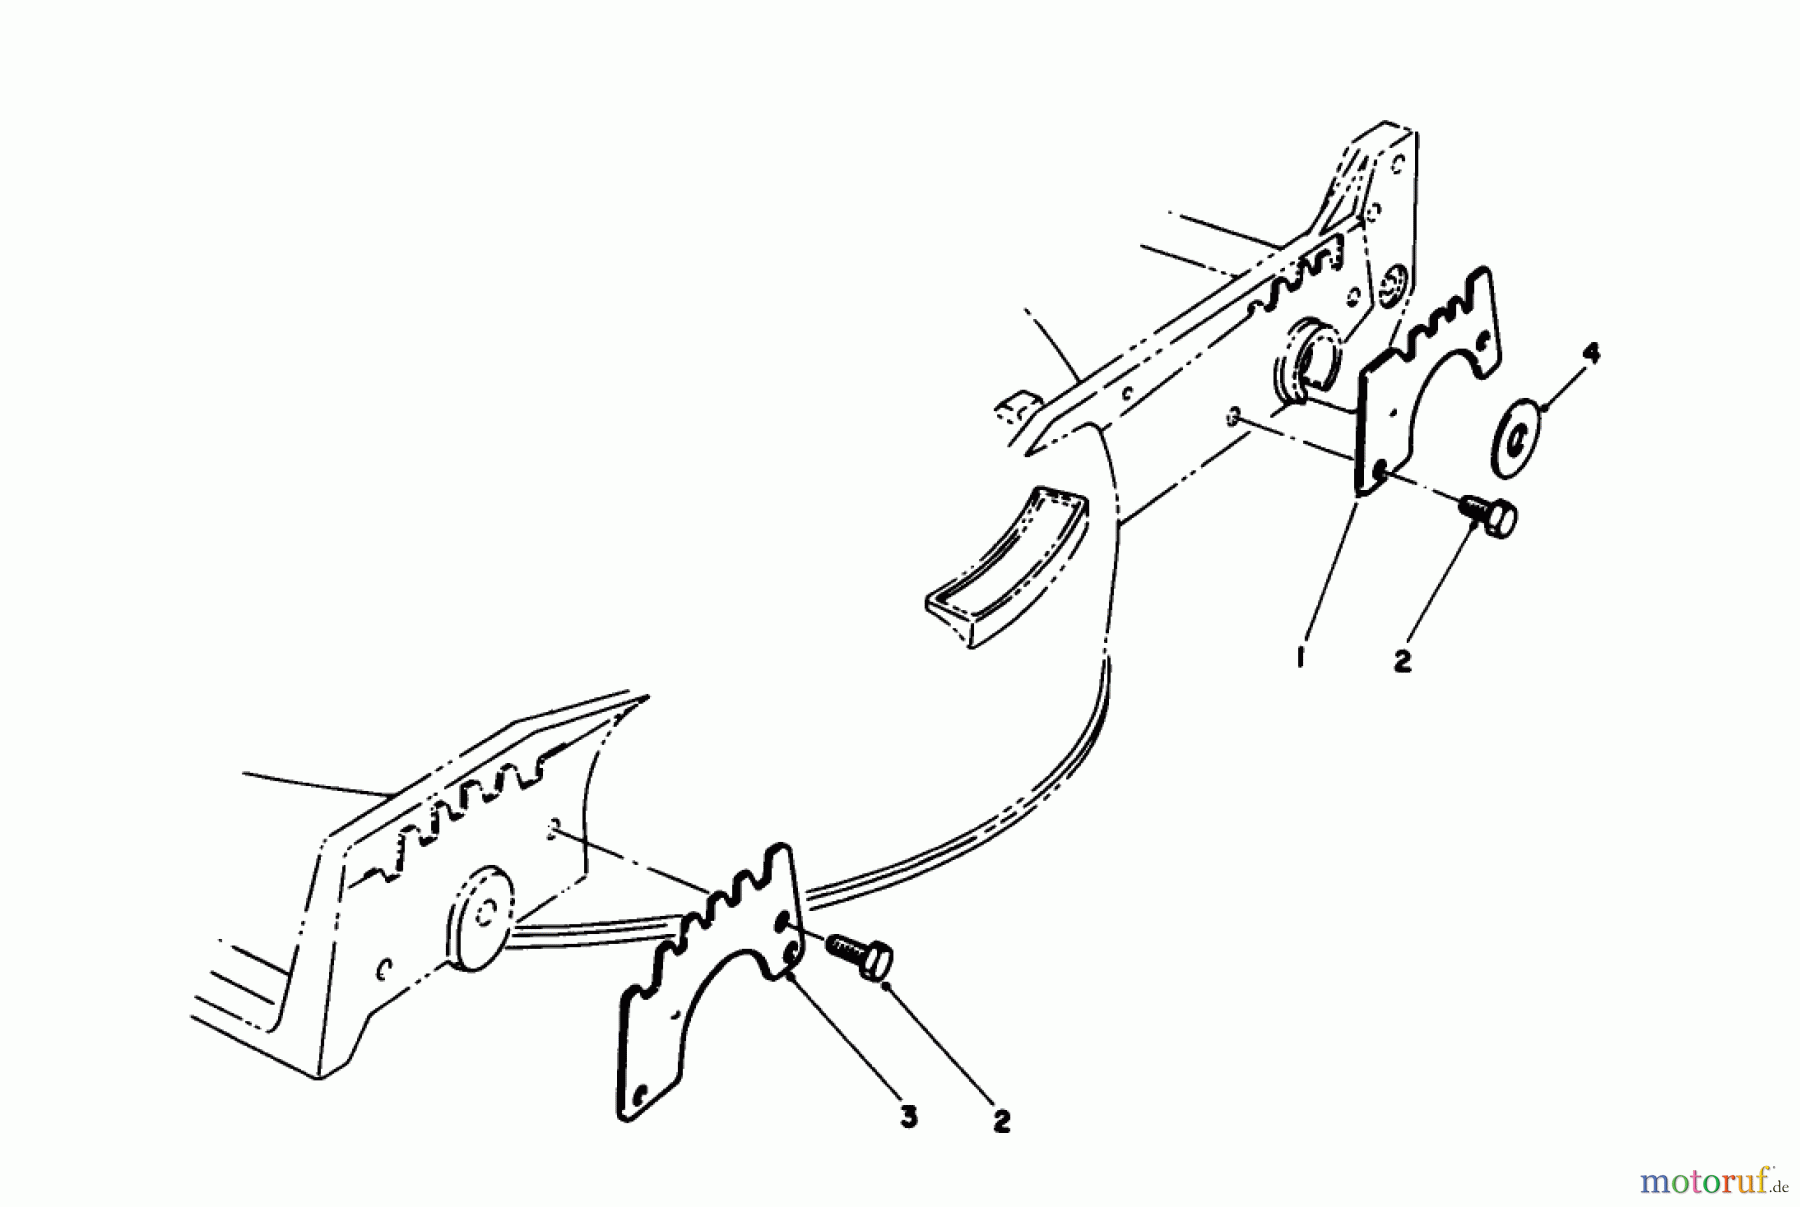  Toro Neu Mowers, Walk-Behind Seite 1 20213 - Toro Lawnmower, 1991 (1000001-1999999) WEAR PLATE MODEL NO. 49-4080 (OPTIONAL)